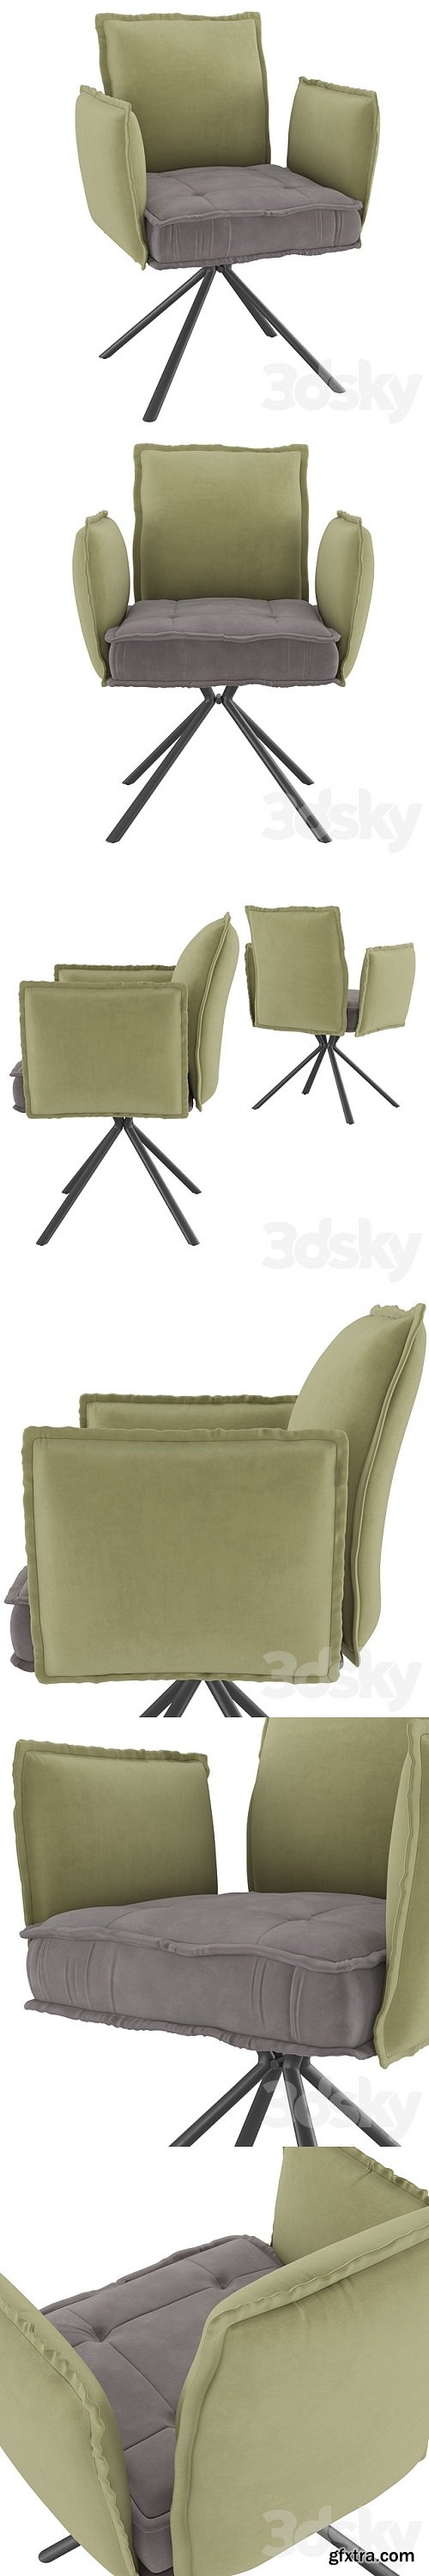 Homary-Modern Upholstered Velvet Accent Chair Soft Chair in Carbon Steel Legs